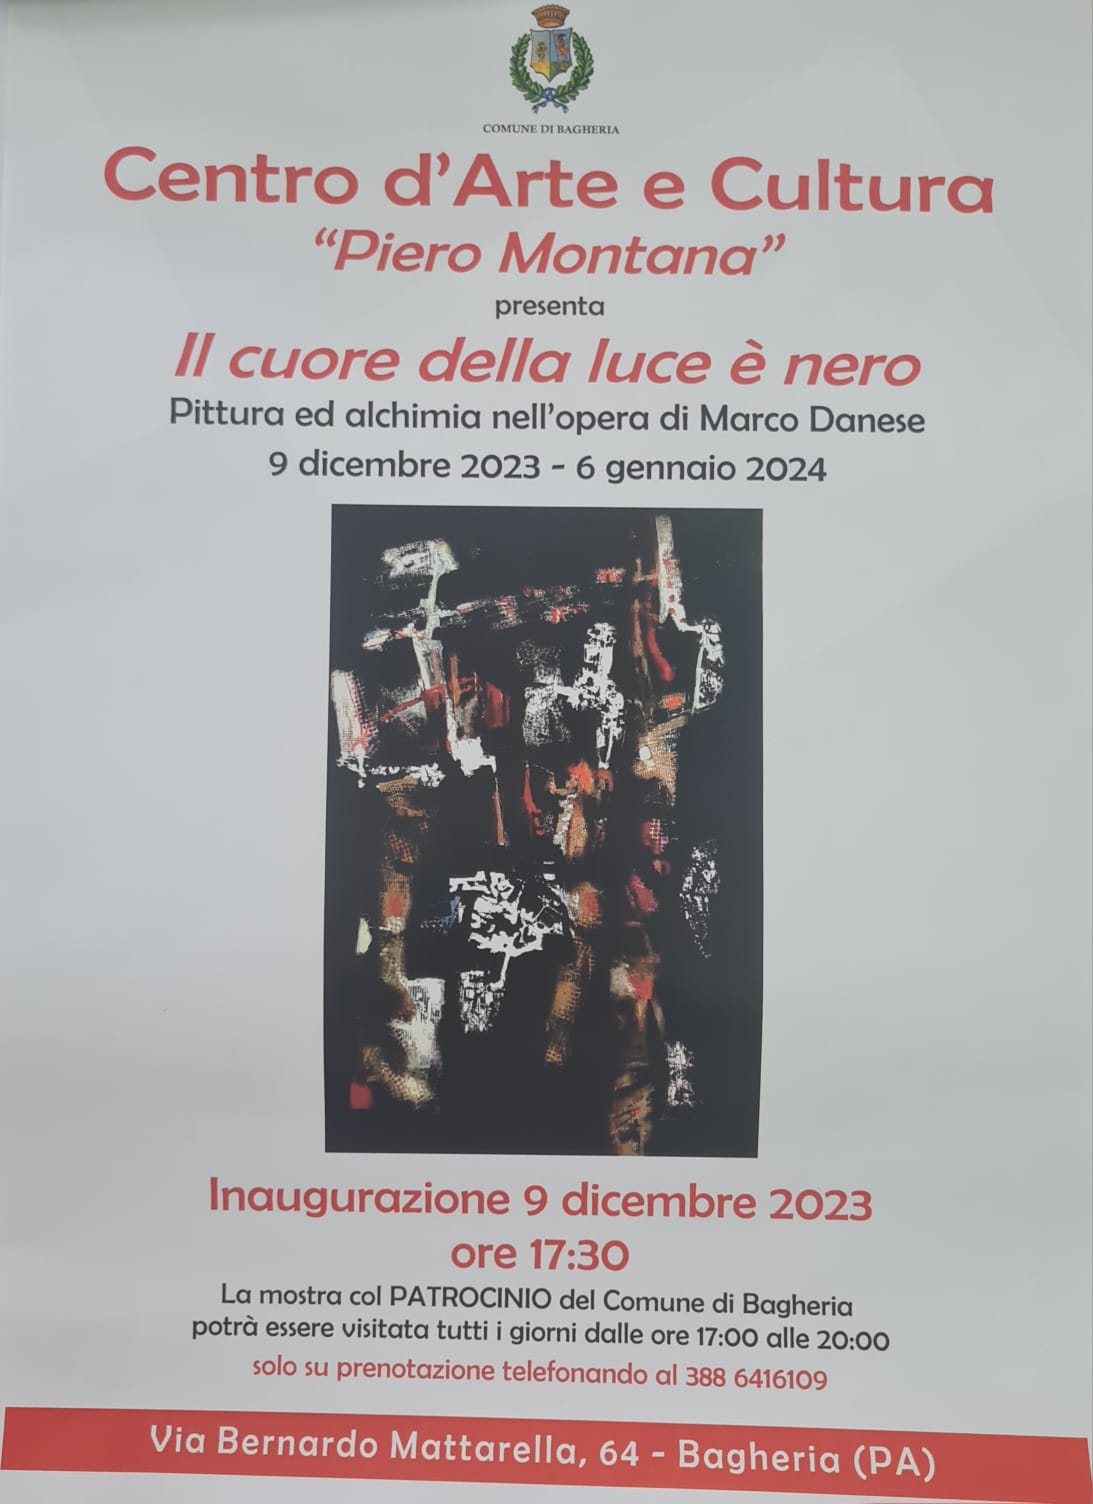 Programma degli eventi artistici-culturali promossi dal Centro d’Arte e Cultura “Piero Montana” per la stagione 2023/2024.